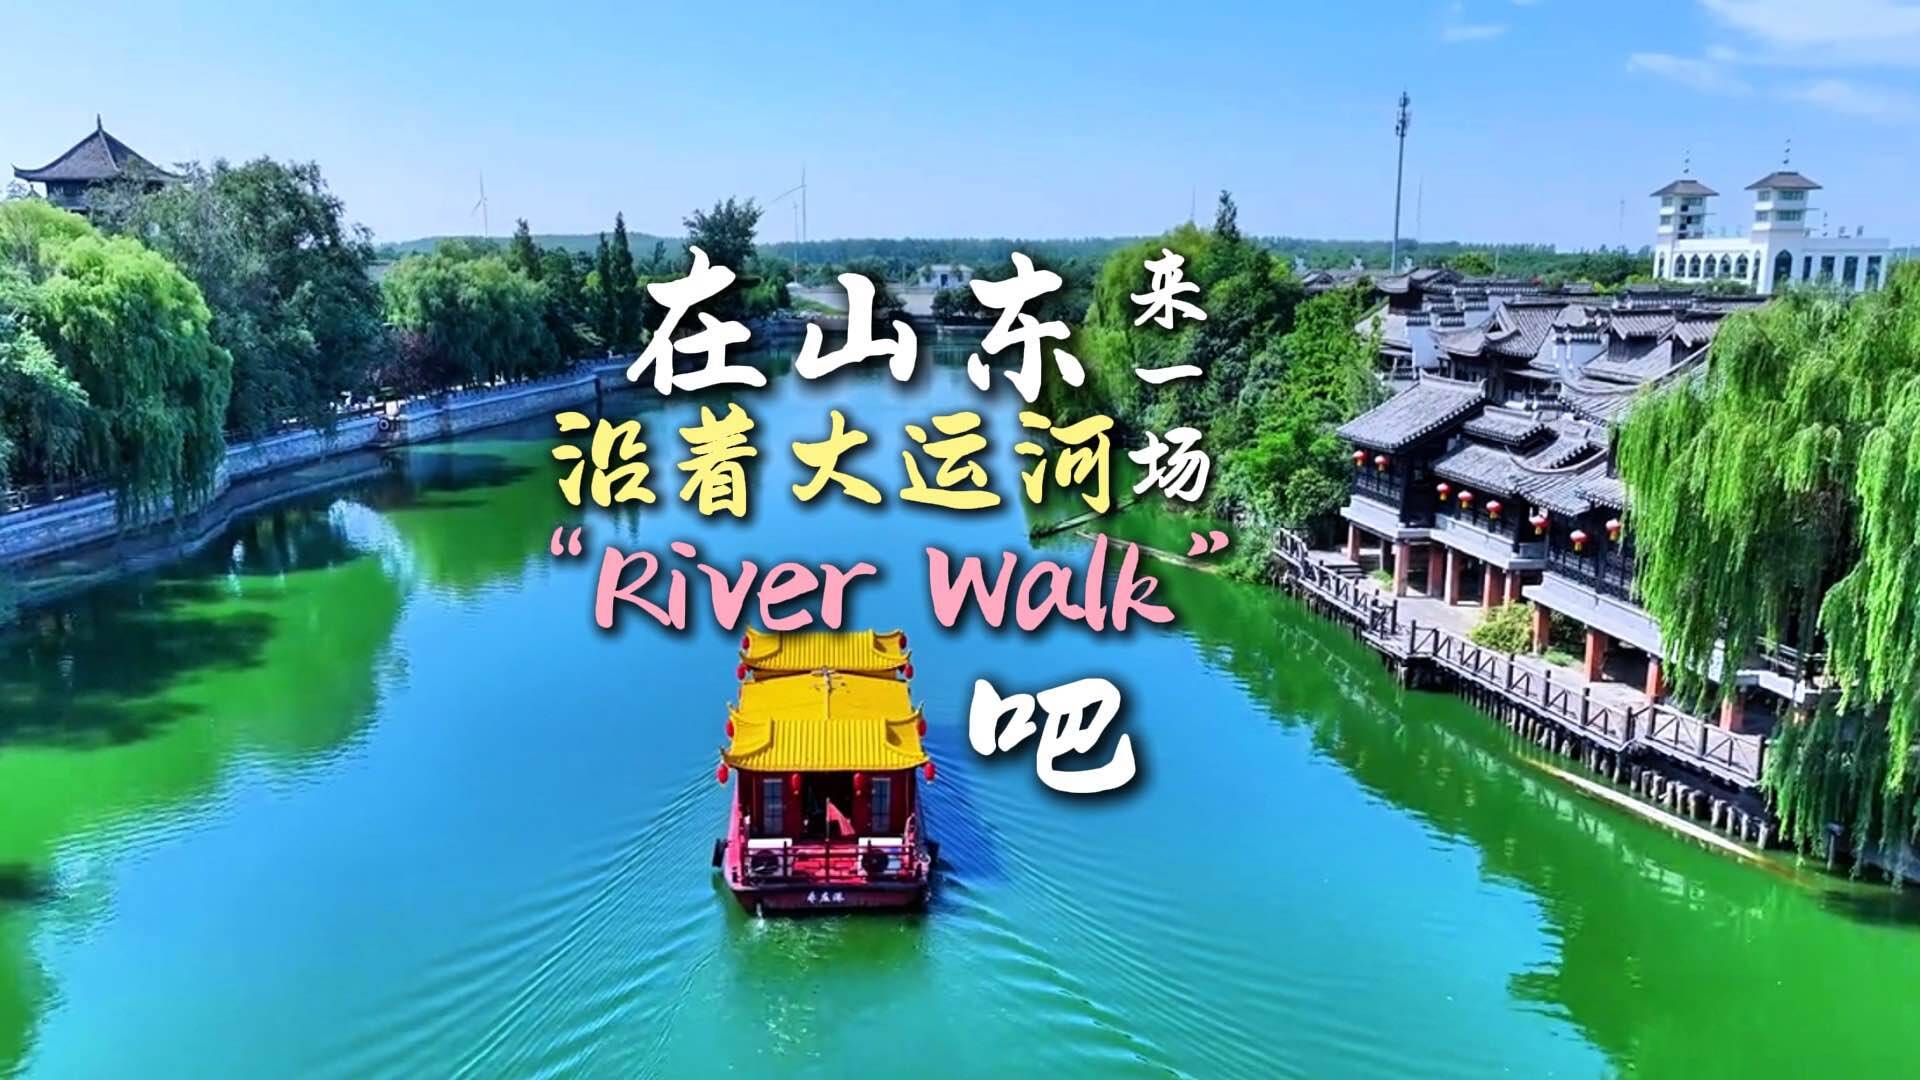 文化中国行丨在山东沿着大运河来一场“河岸漫步”